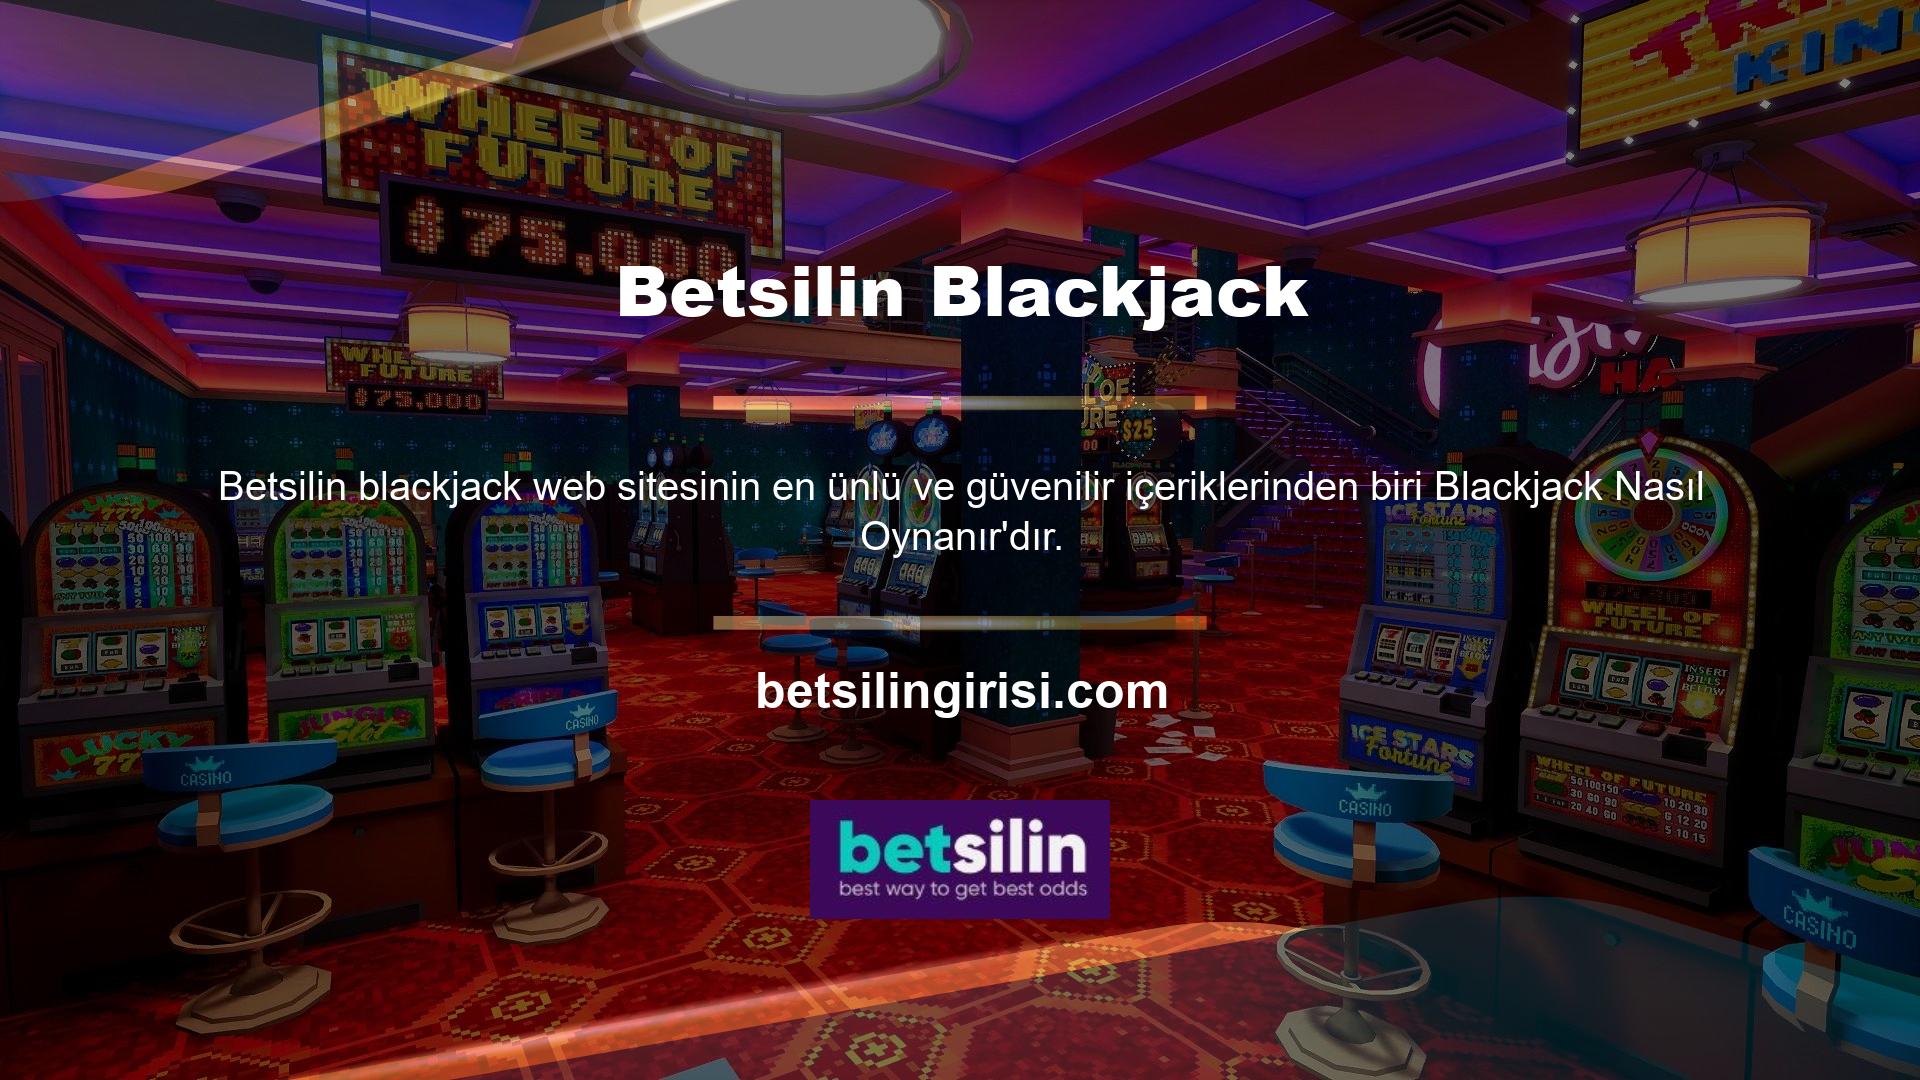 Blackjack oynayabilmek için önce siteye kayıt olmanız gerekmektedir